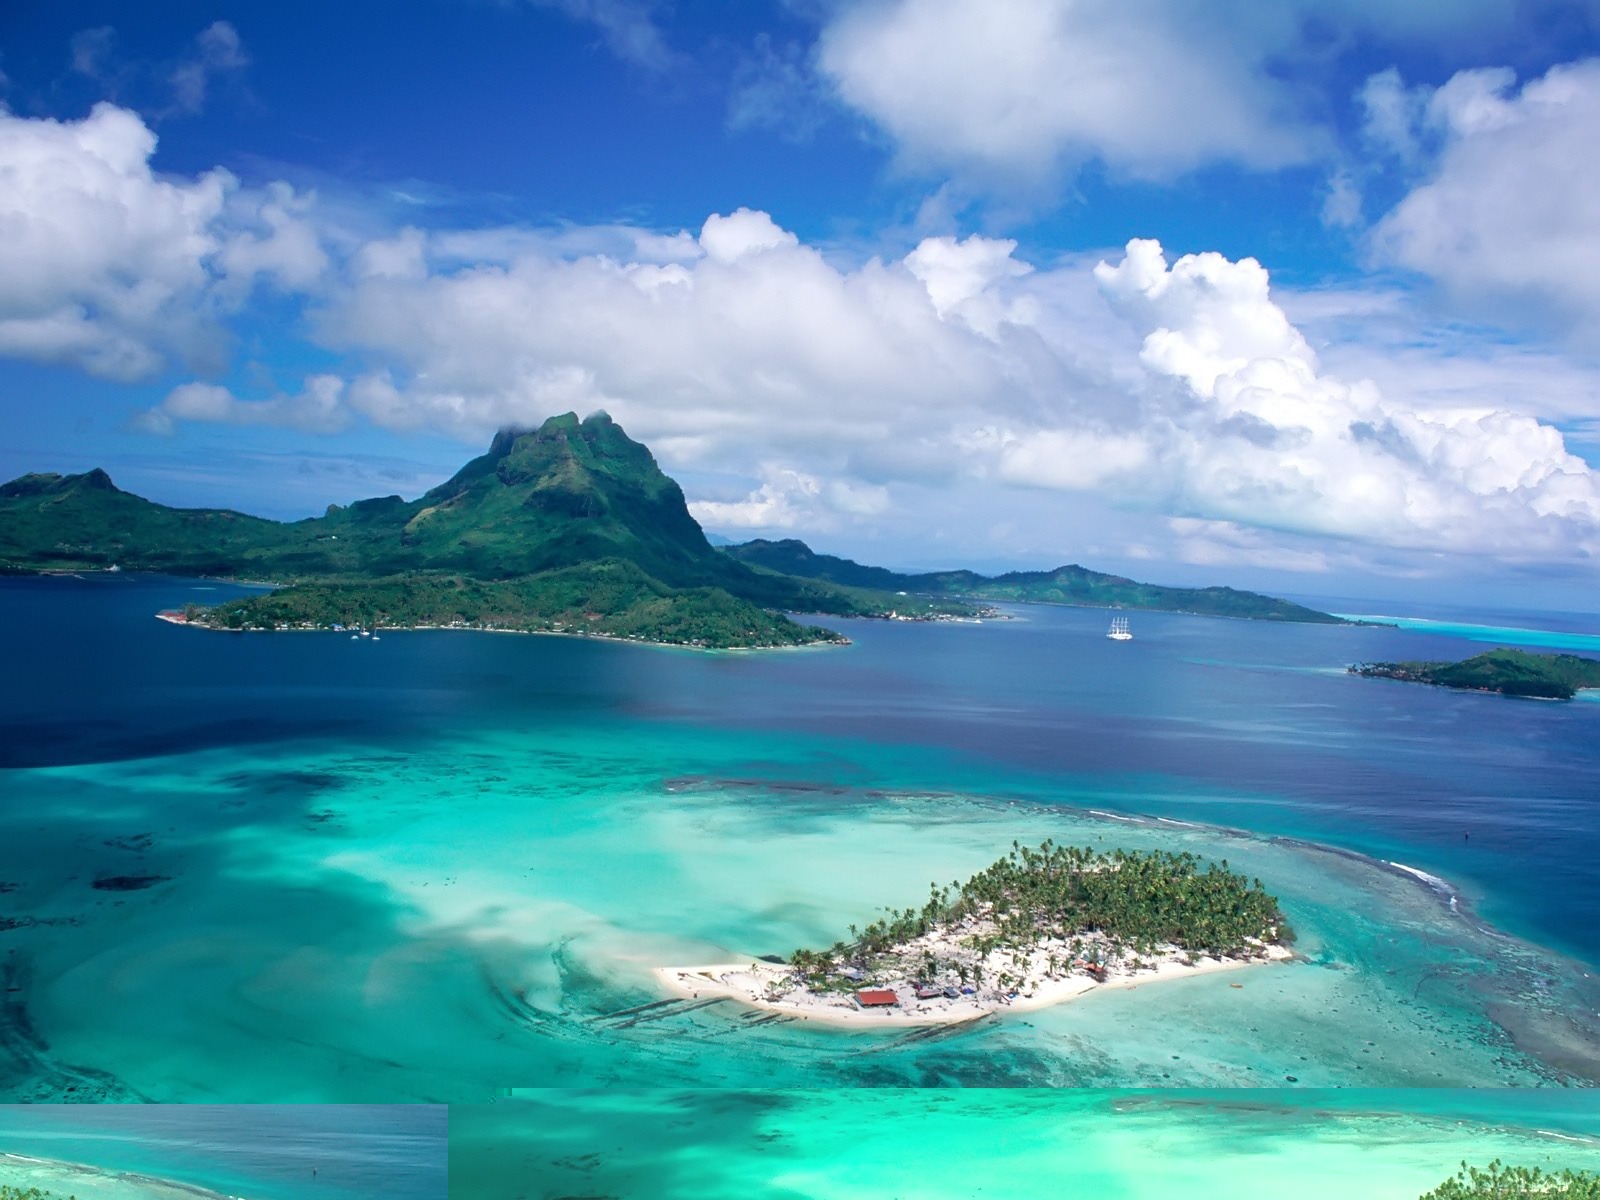 Tahiti Wallpaper Beaches Nature In Jpg Format For